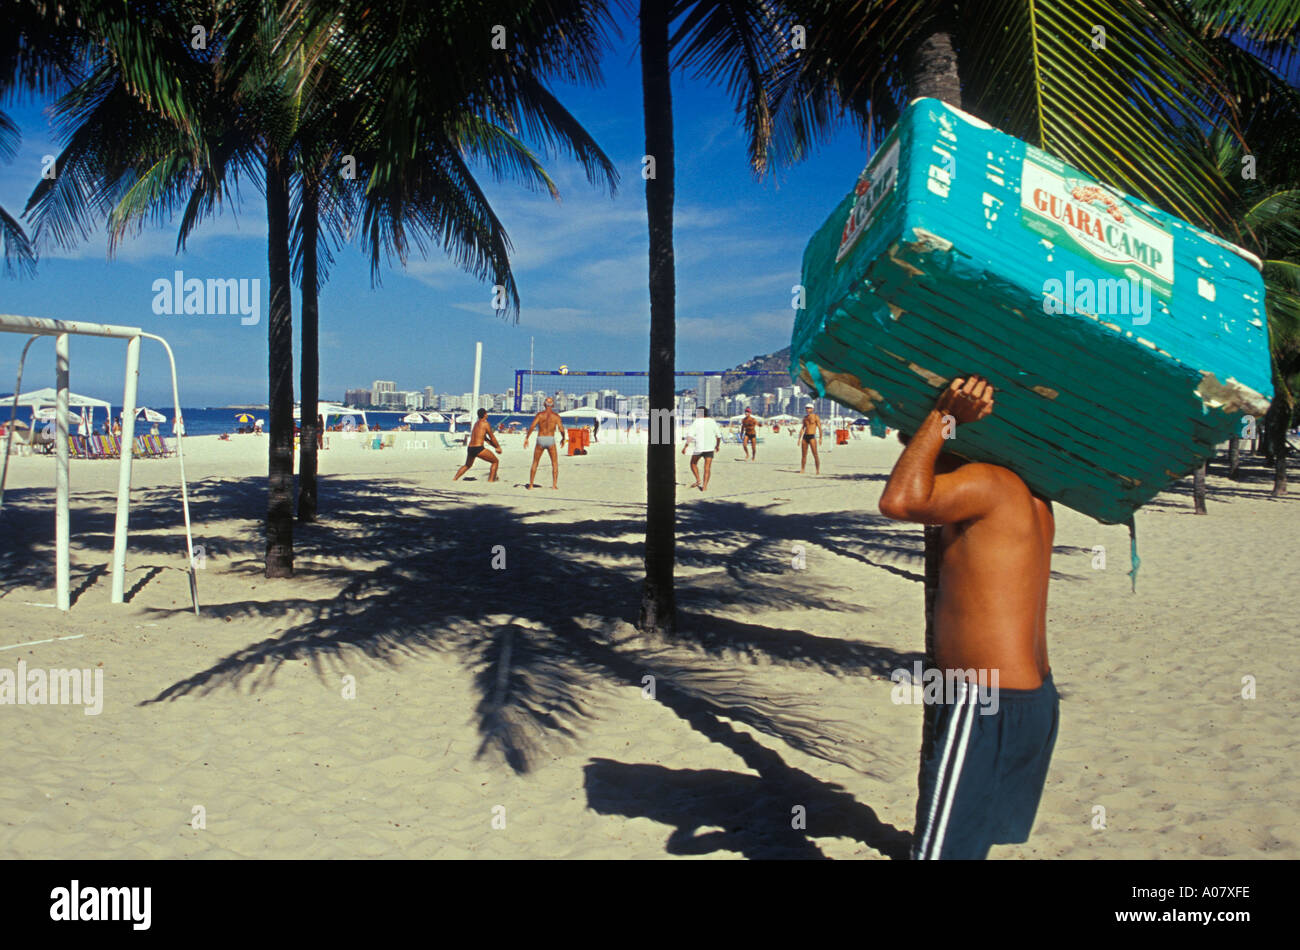 Vendeur de plage porte fort de boissons de personnes jouent futivolei footvolley palmiers plage Copacabana Rio de Janeiro Brésil Banque D'Images